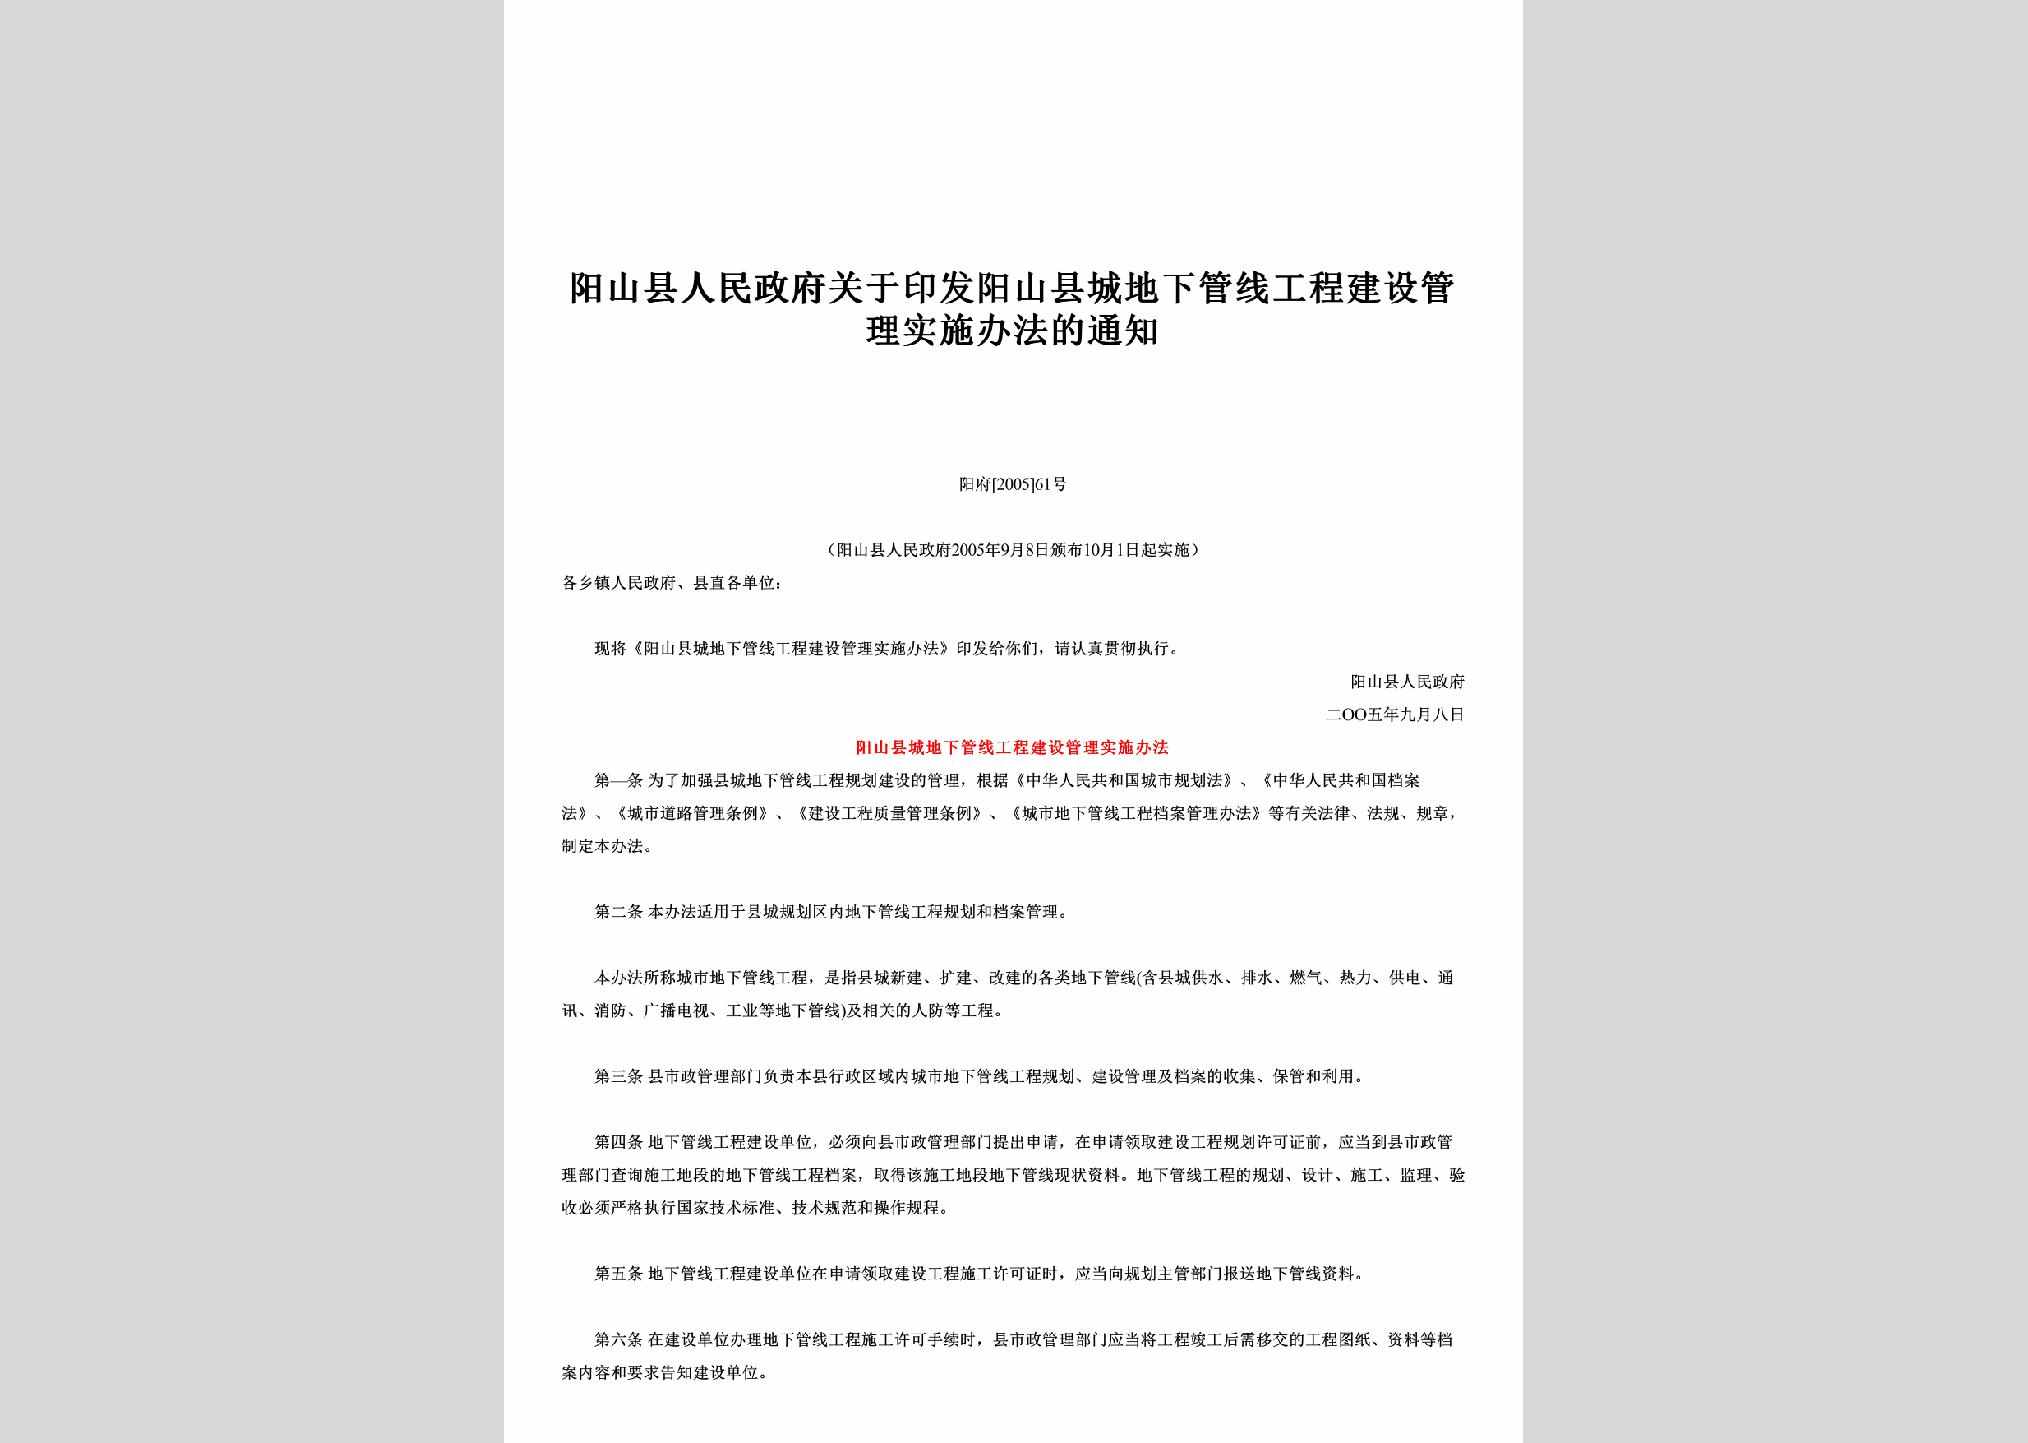 阳府[2005]61号：关于印发阳山县城地下管线工程建设管理实施办法的通知